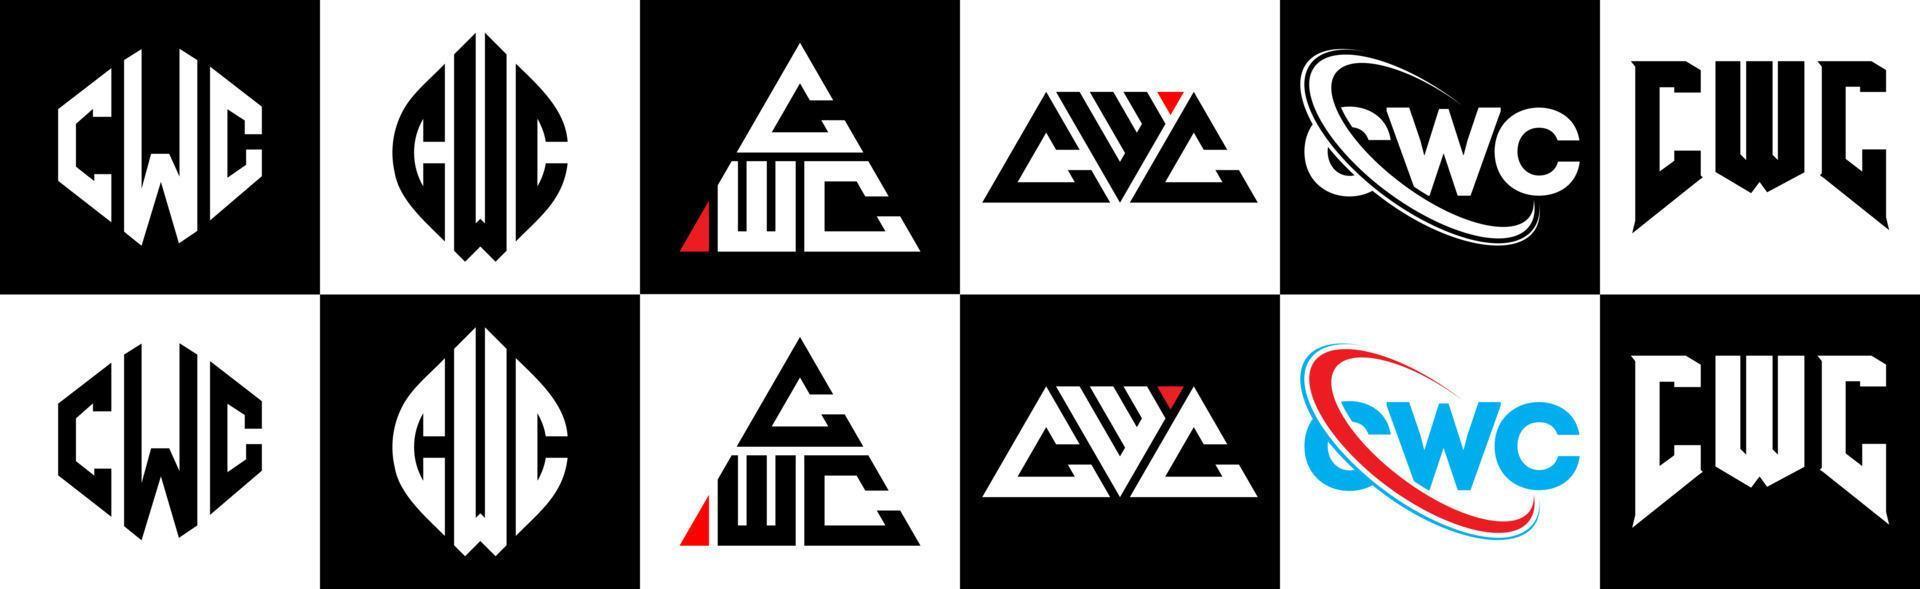 CWC Logo Design - 48hourslogo